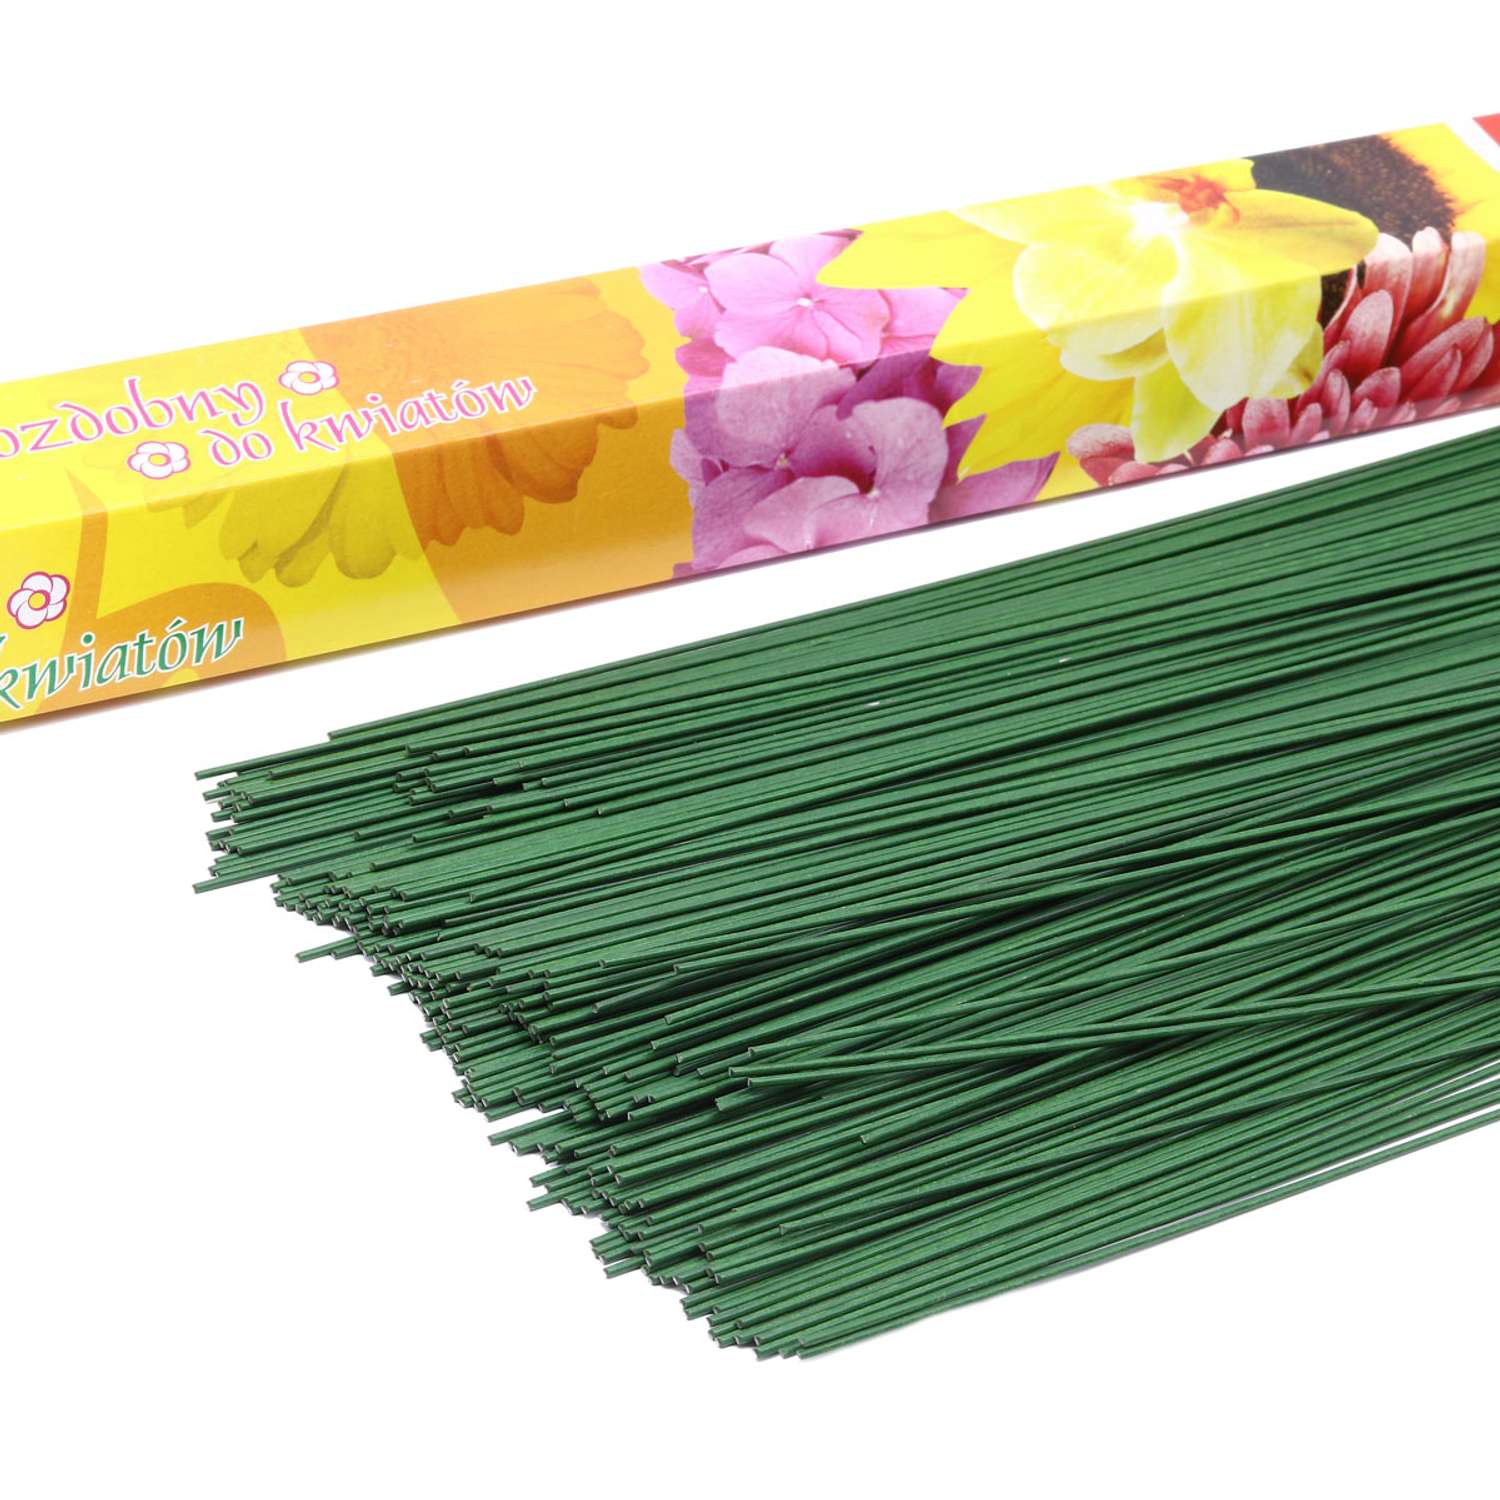 Проволока флористическая Айрис для рукоделия цветов создания композиции плетения каркасов зеленая 1 кг х 1.2 мм - фото 2